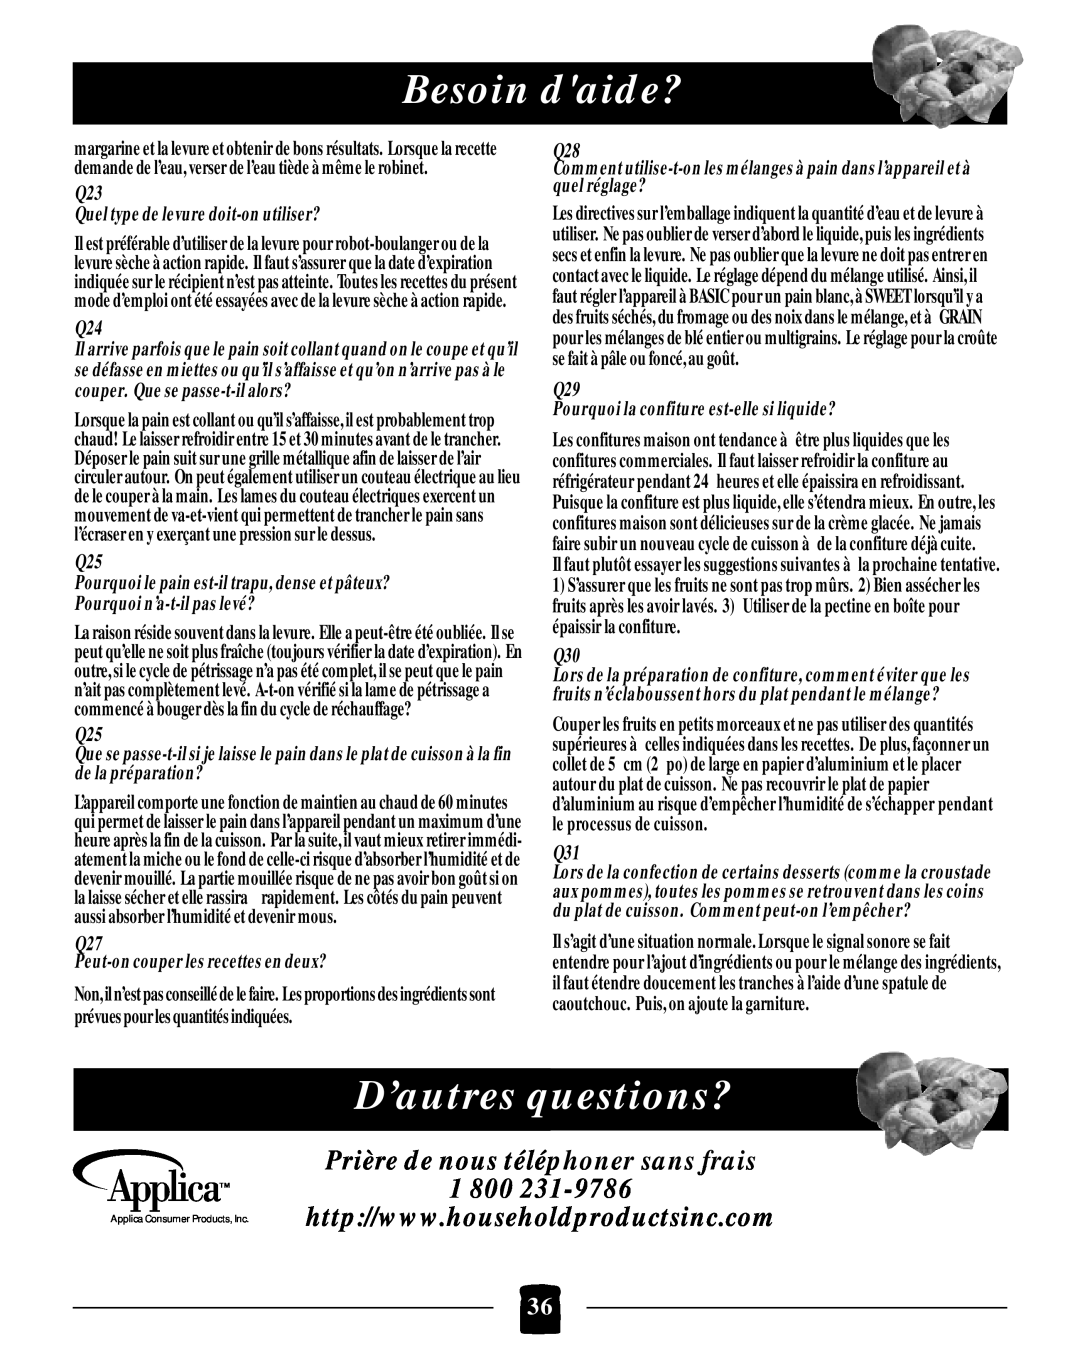 Black & Decker B2005 manual D’autres questions?, Besoin daide?, Prière de nous téléphoner sans frais 1 800 